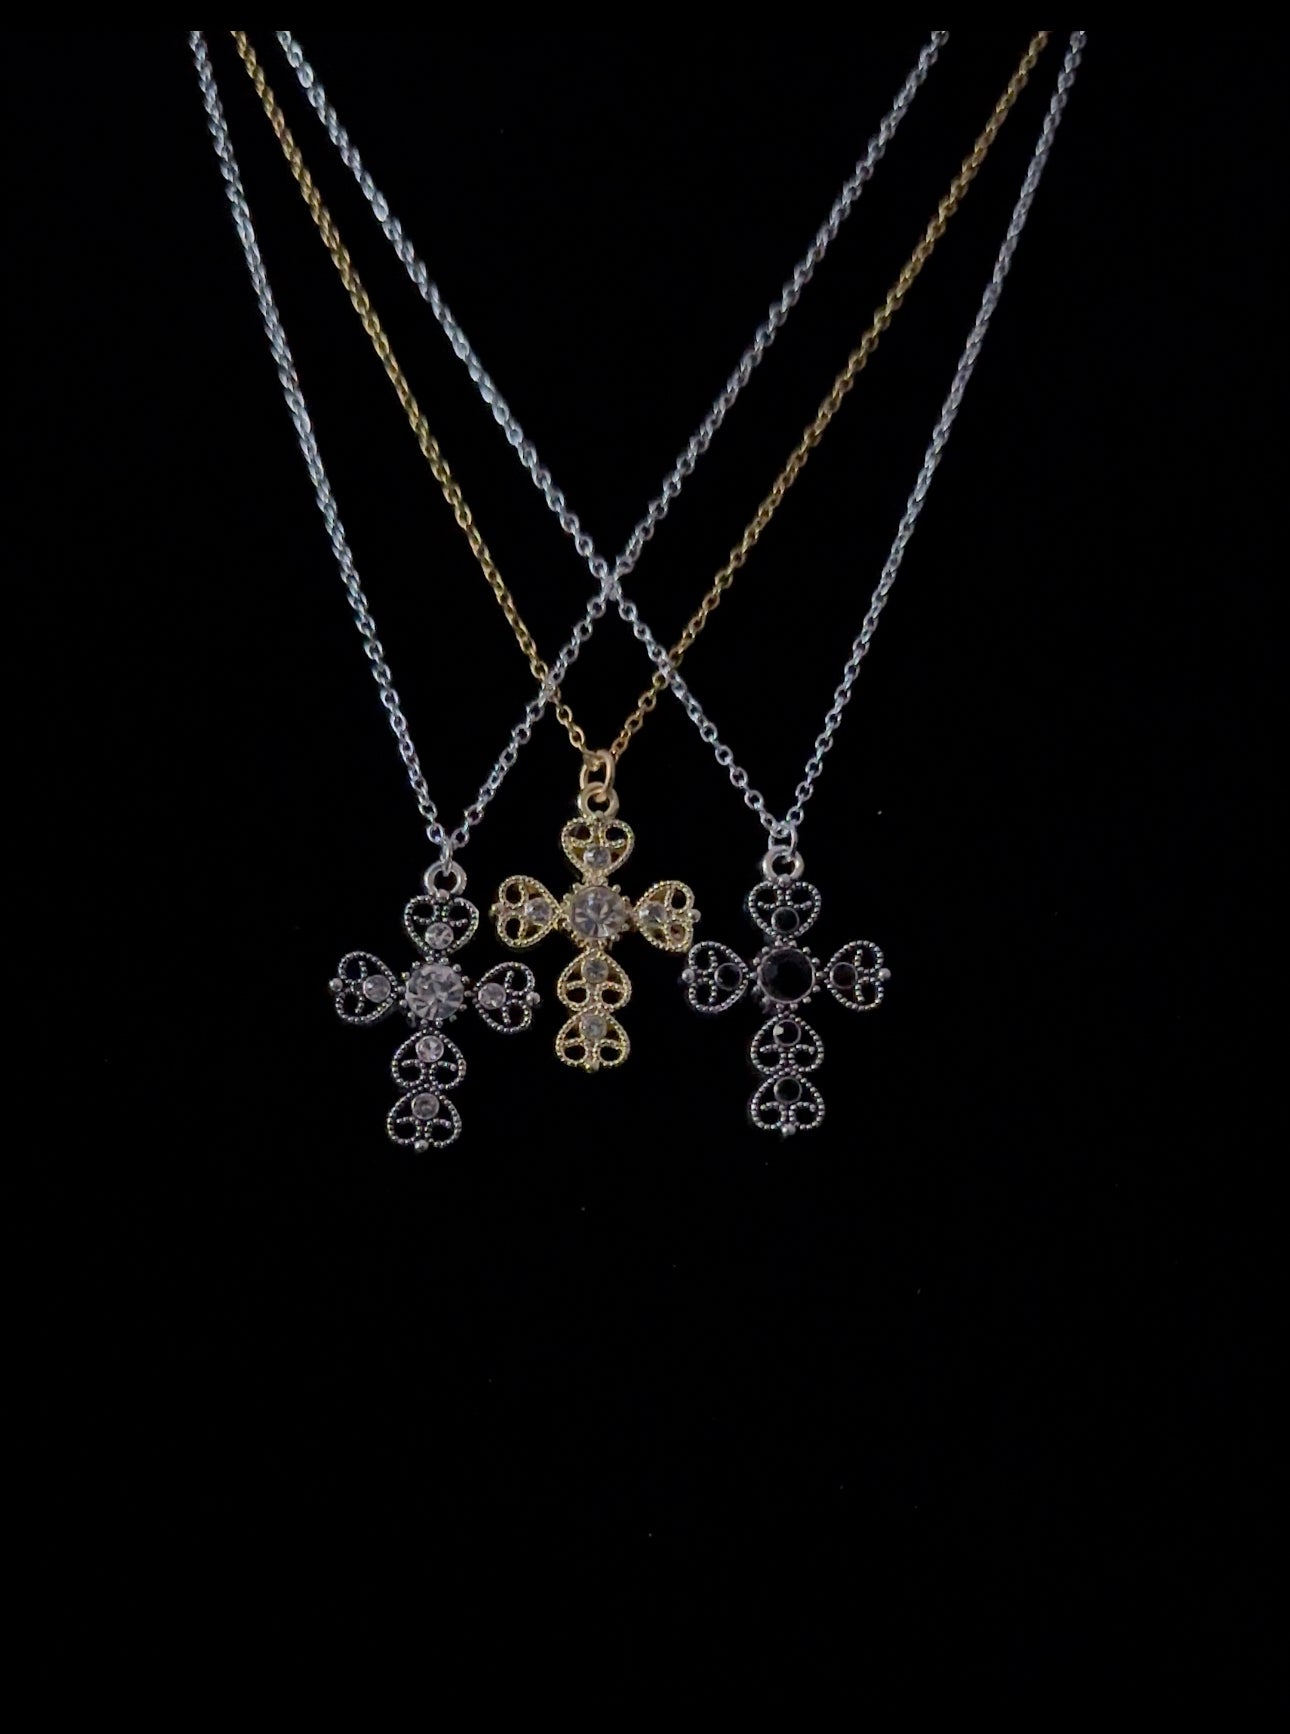 Decorative Cross Pendant Necklace